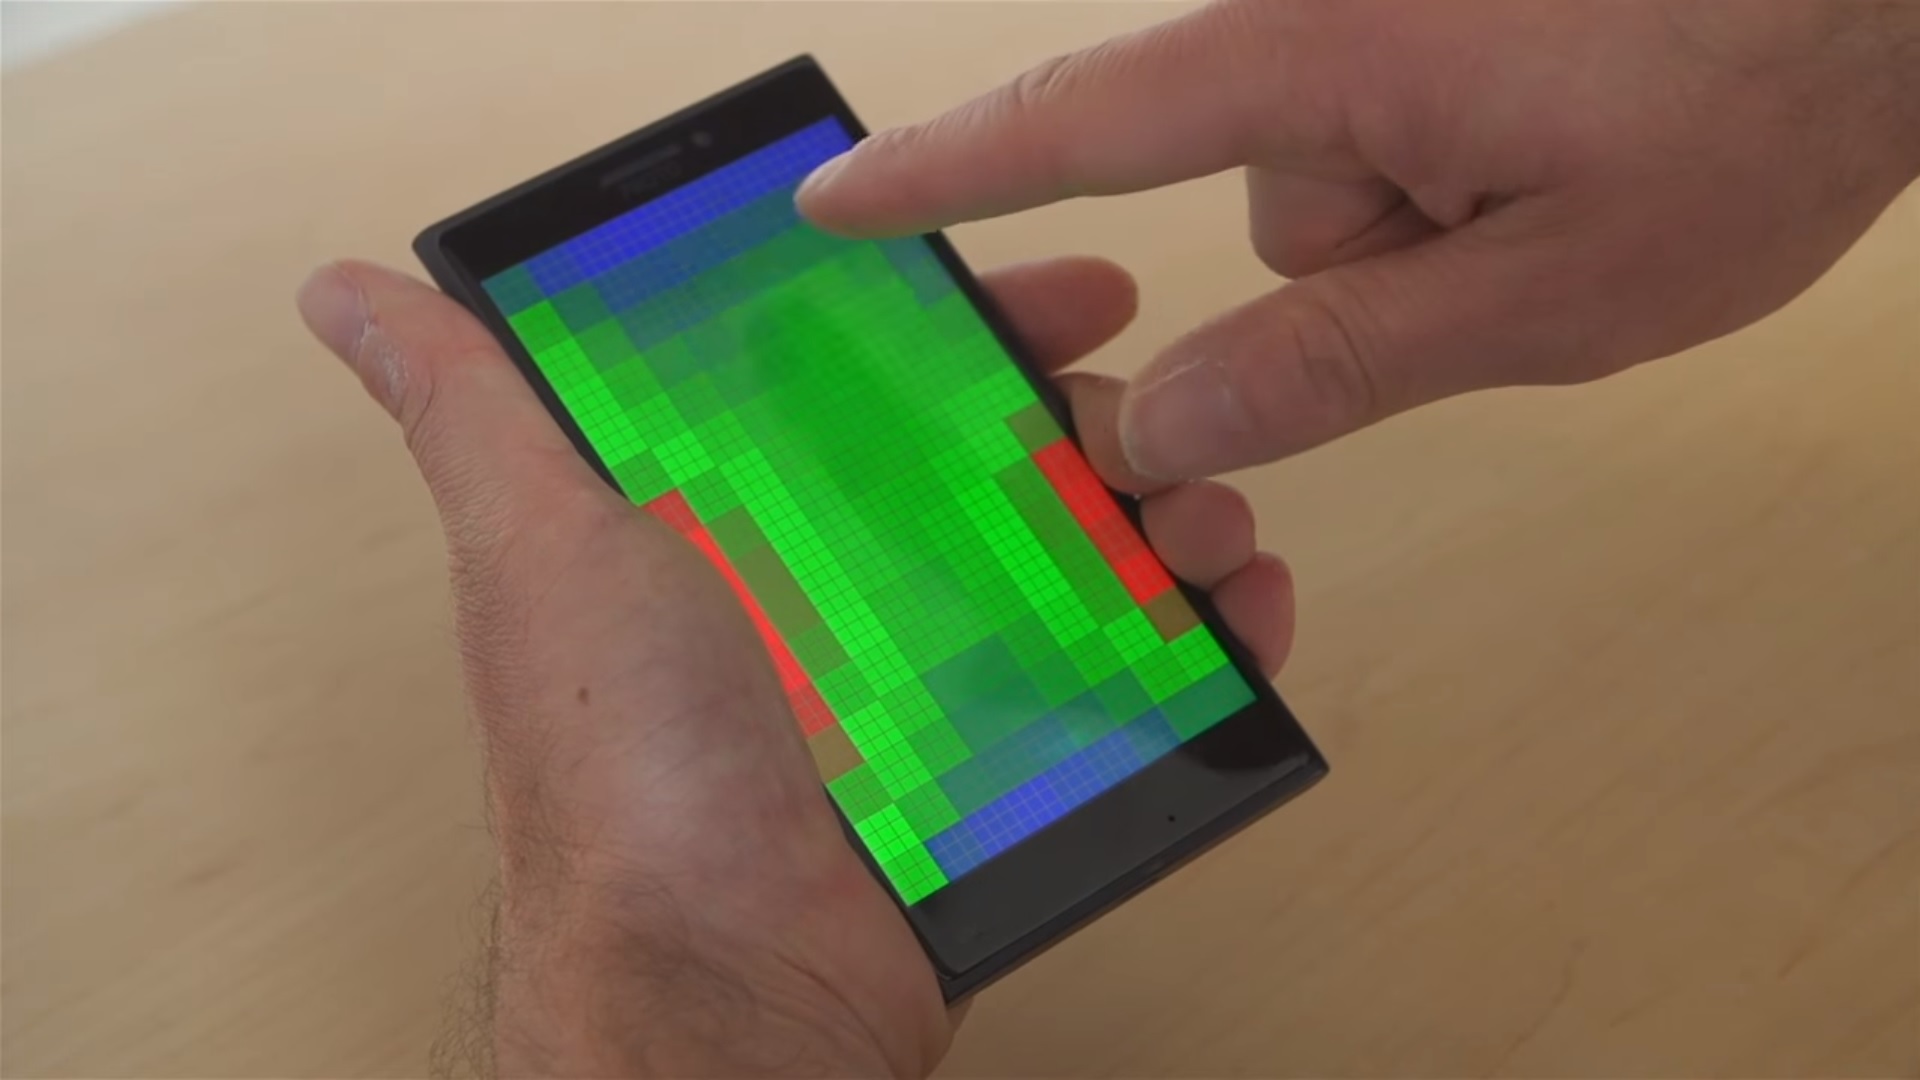 ชมคลิป !! Windows Phone ในอนาคตจะมีหน้าจอที่มีตรวจจับก่อนสัมผัส พร้อมฟีเจอร์สุดล้ำไม่แพ้ 3D Touch !!